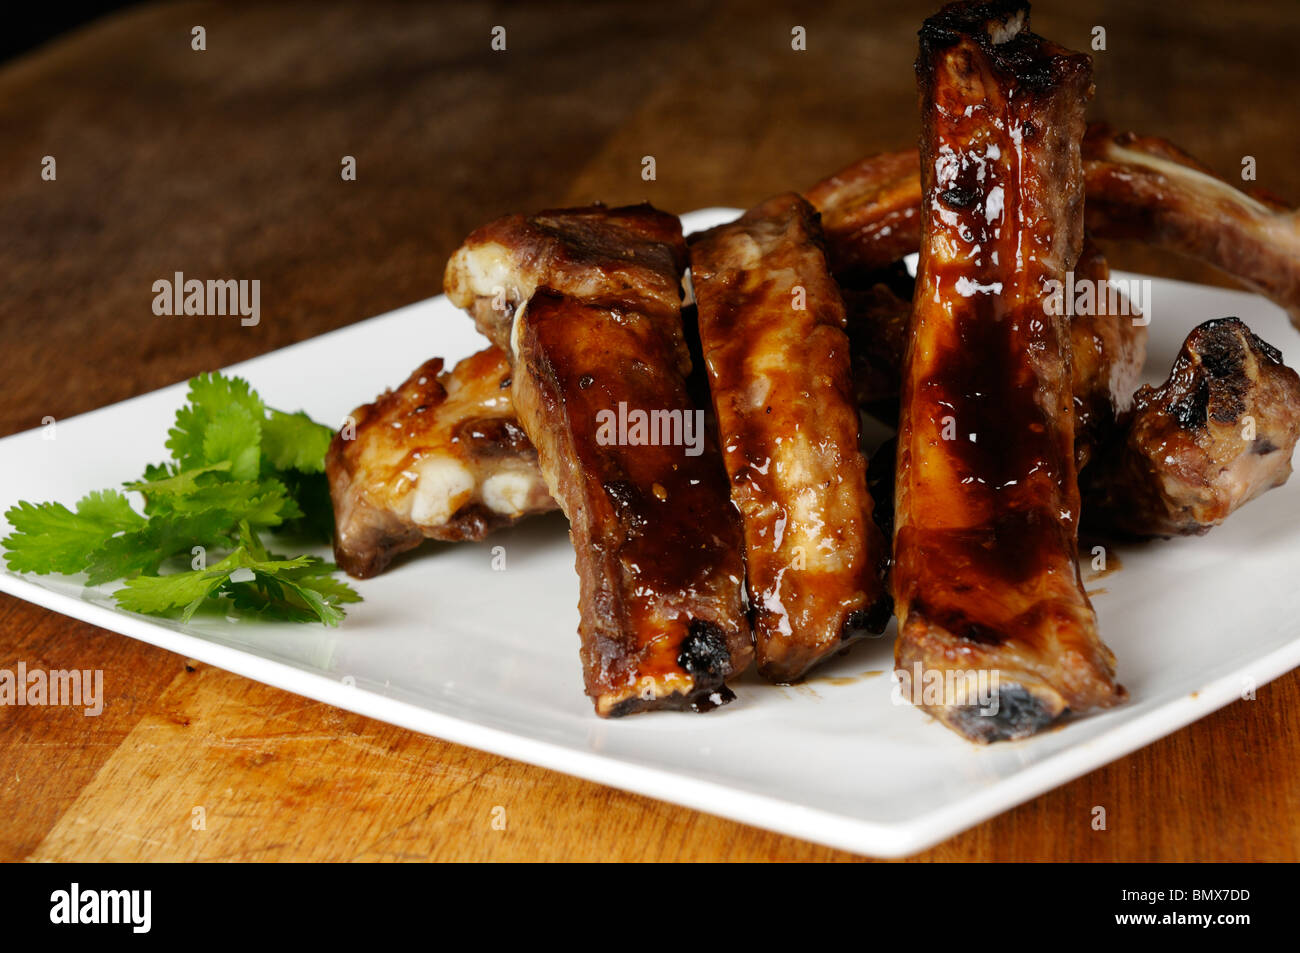 Stock Foto von verglasten Schweinefleisch Spareribs auf einem weißen Teller. Stockfoto